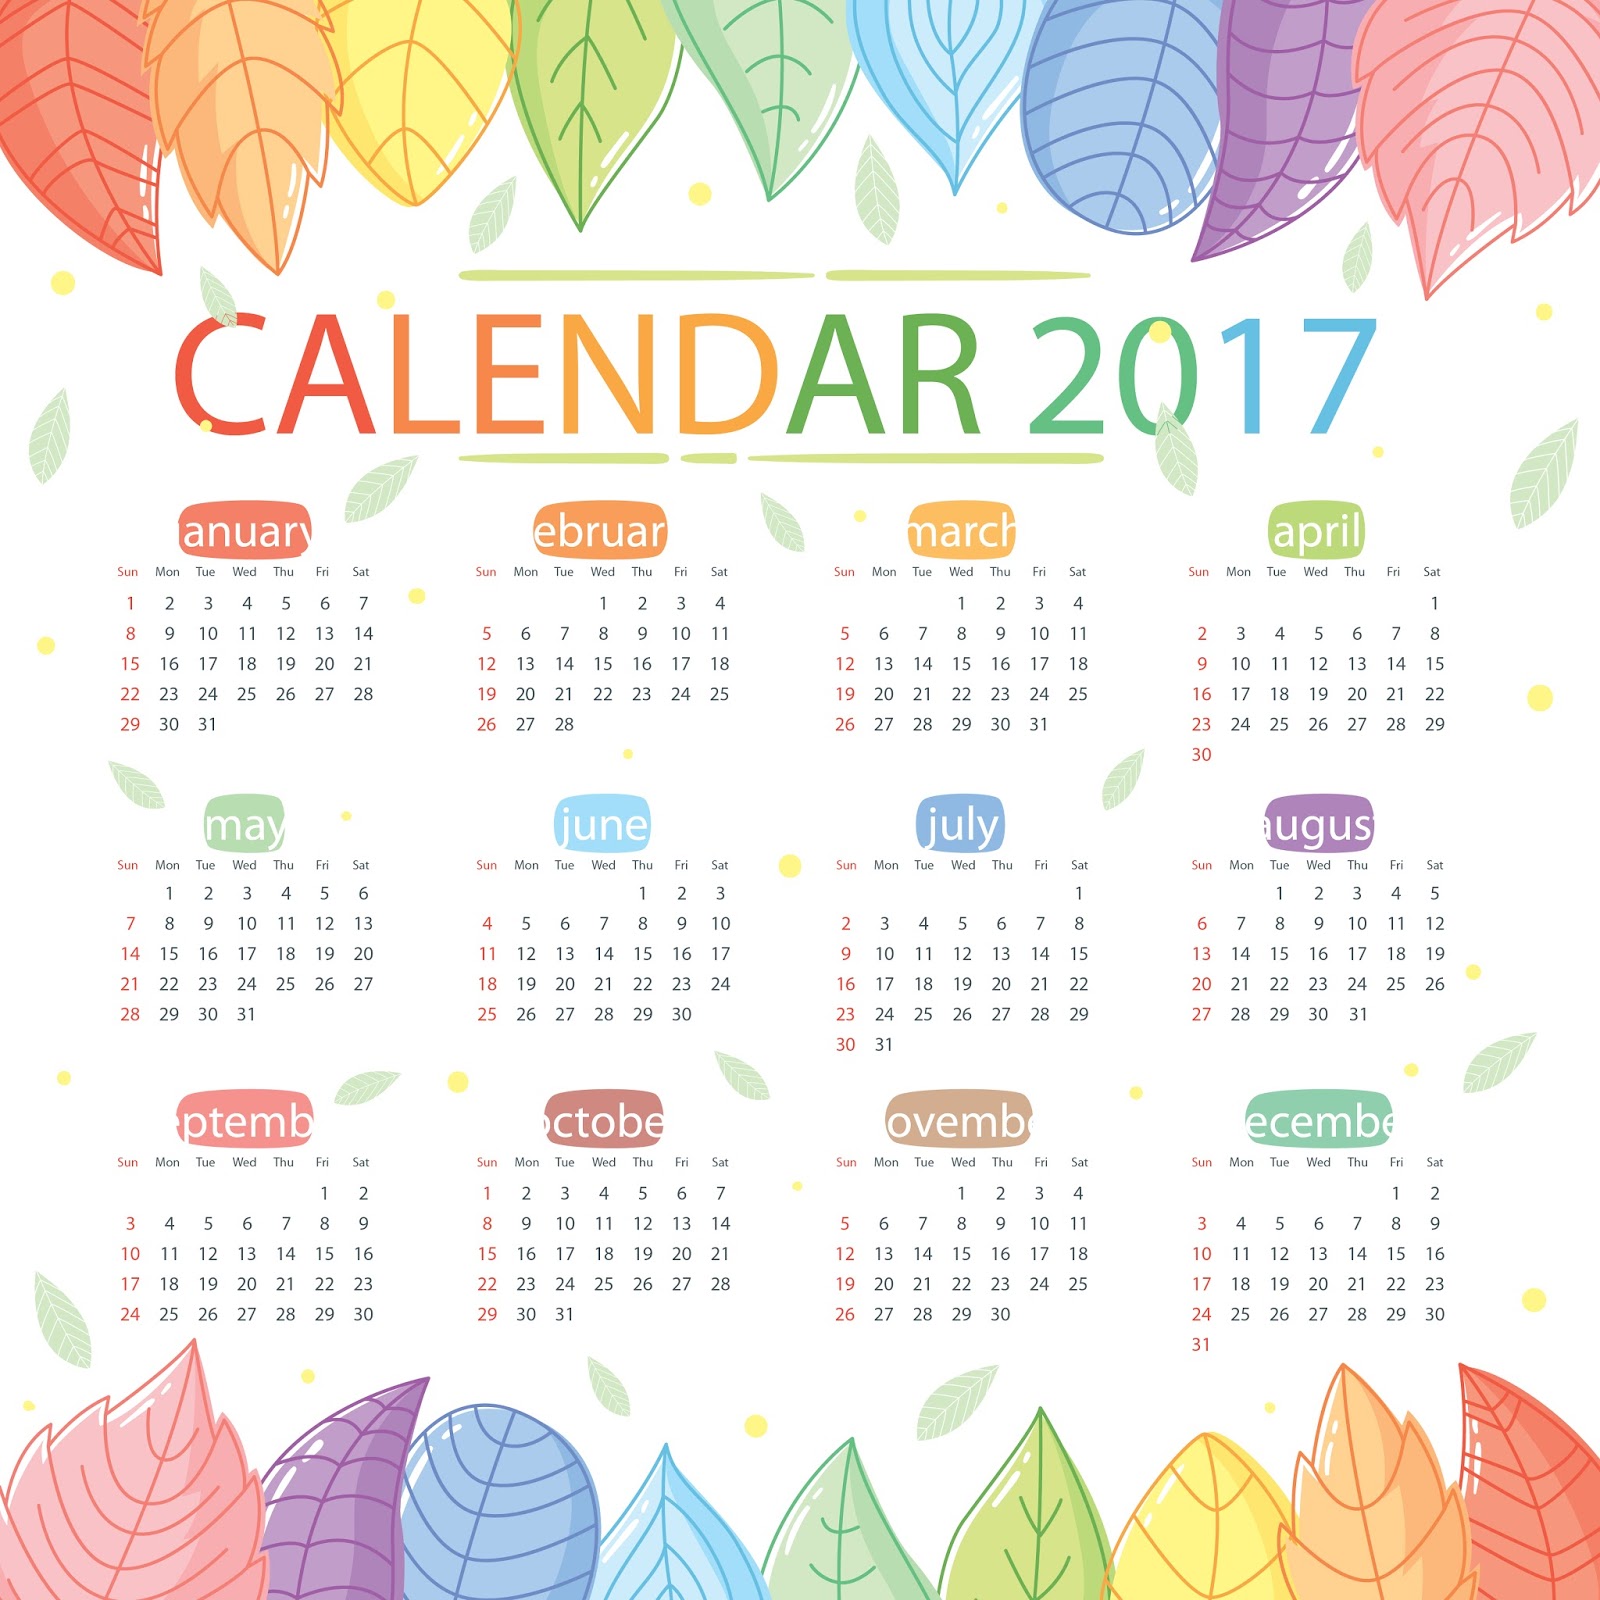 Kalendar 2017 & Cuti Umum Malaysia  Arnamee blogspot